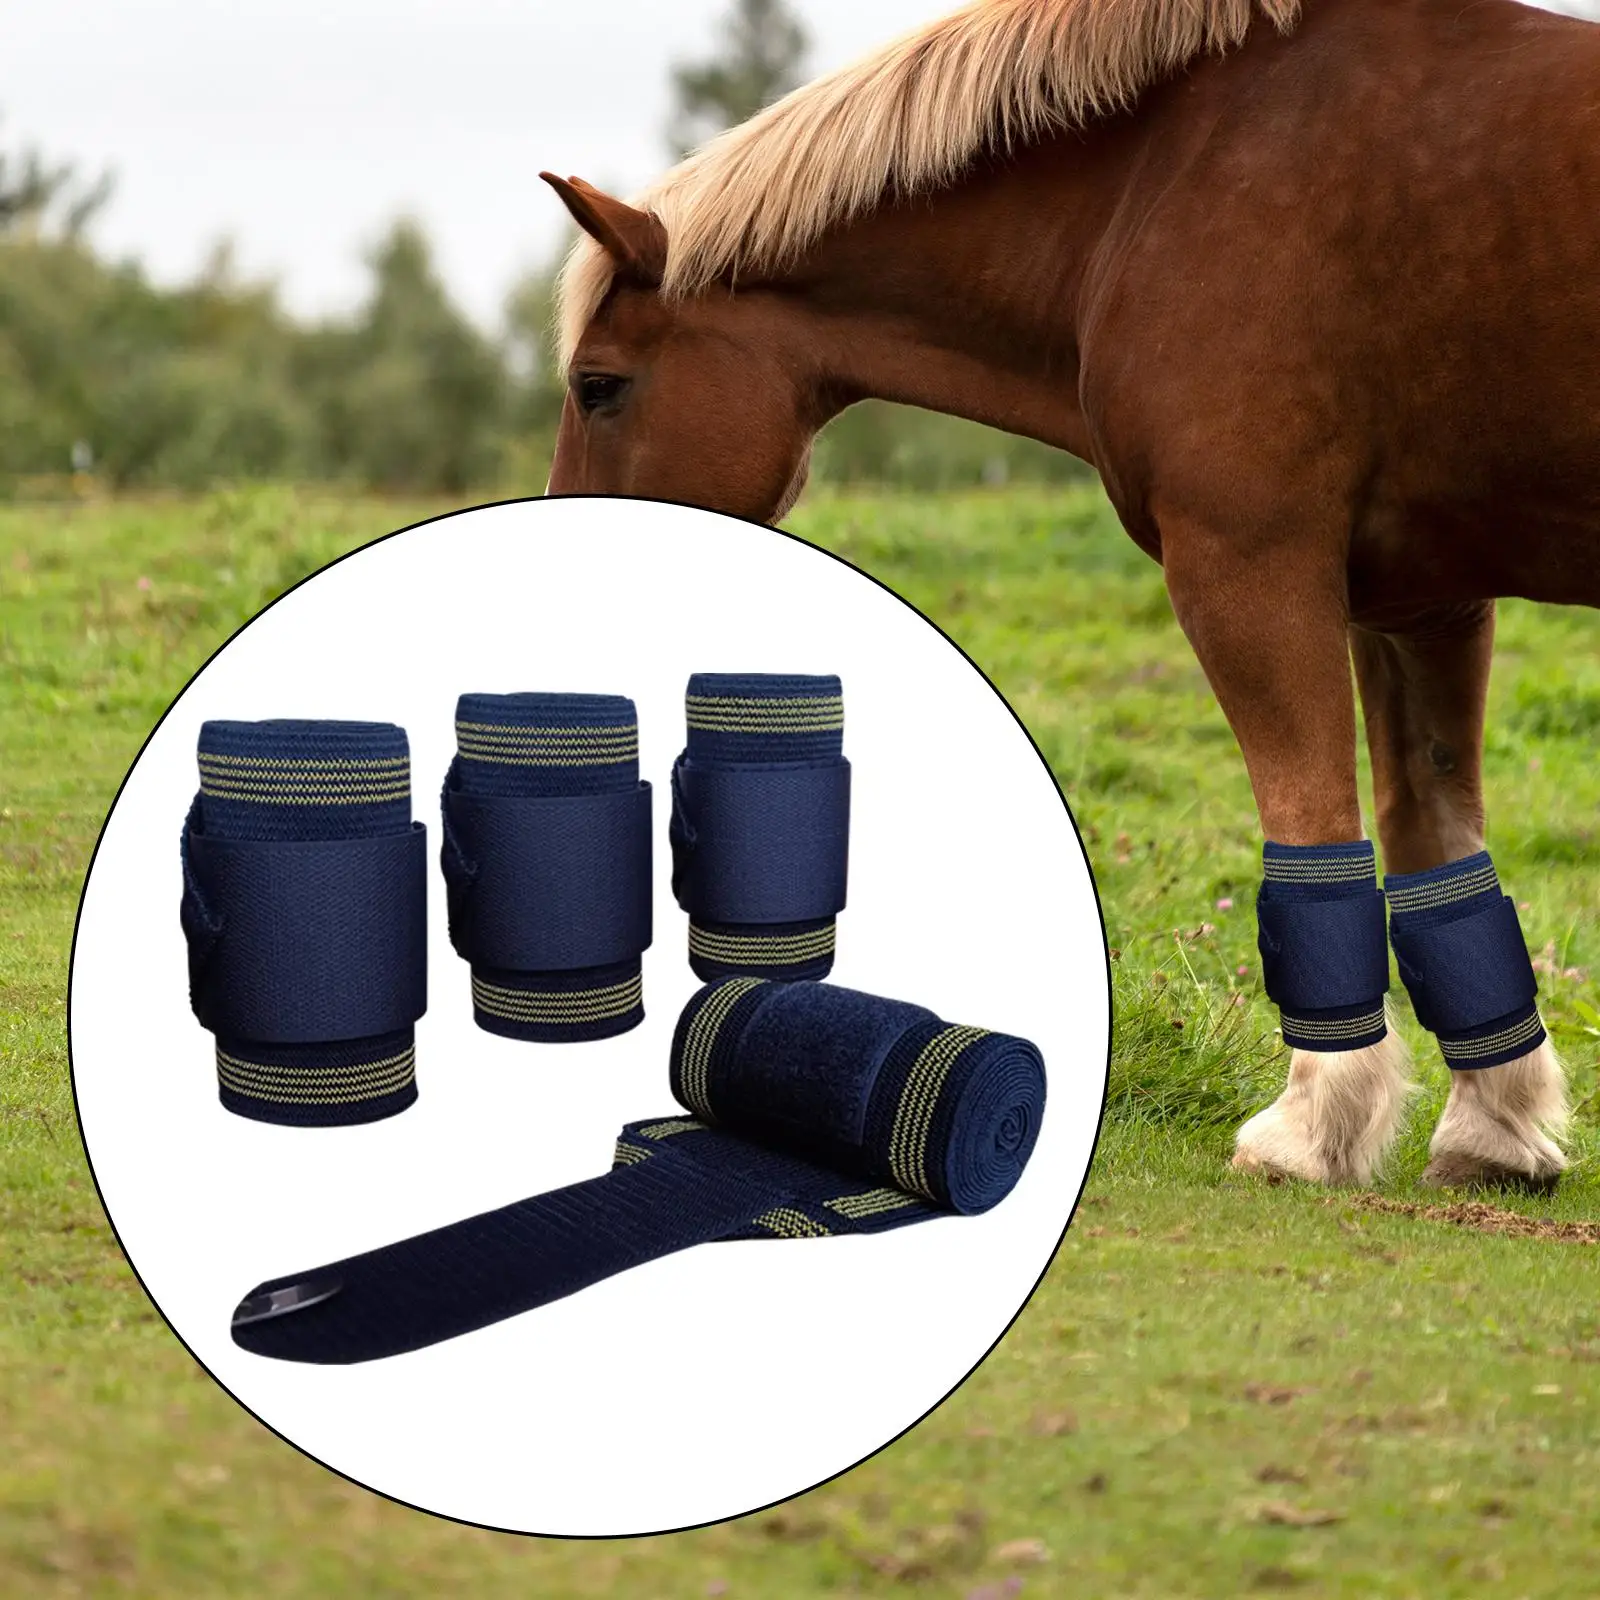 4Pieces Horse Leg Wraps Horse Support Horse Leggings Wrap Riding Race Leg Protection Wraps Leg Guards Equestrian Accessories